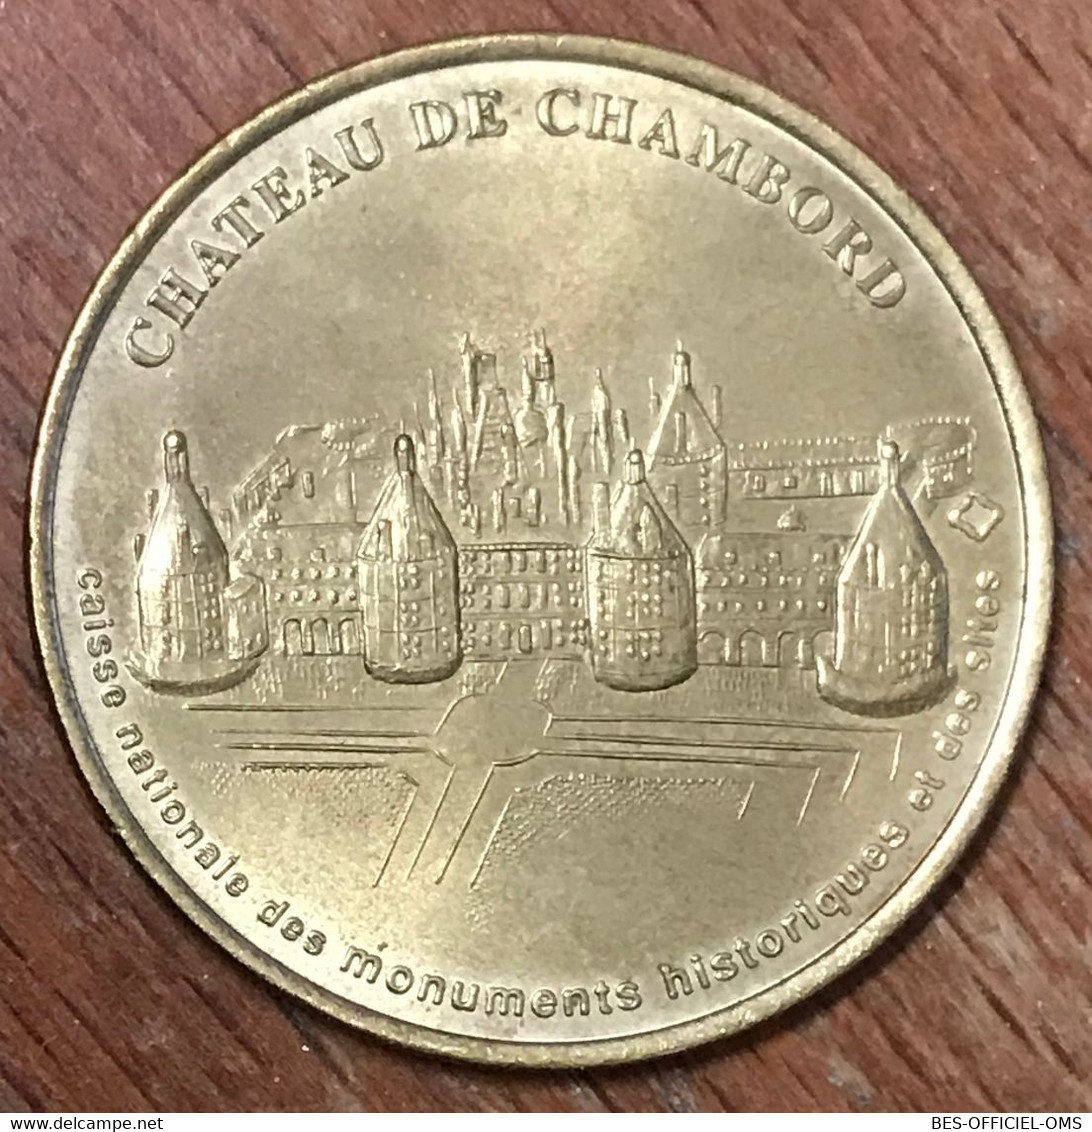 41 CHÂTEAU DE CHAMBORD MDP 2001 MÉDAILLE SOUVENIR MONNAIE DE PARIS JETON TOURISTIQUE MEDALS COINS TOKENS - 2001